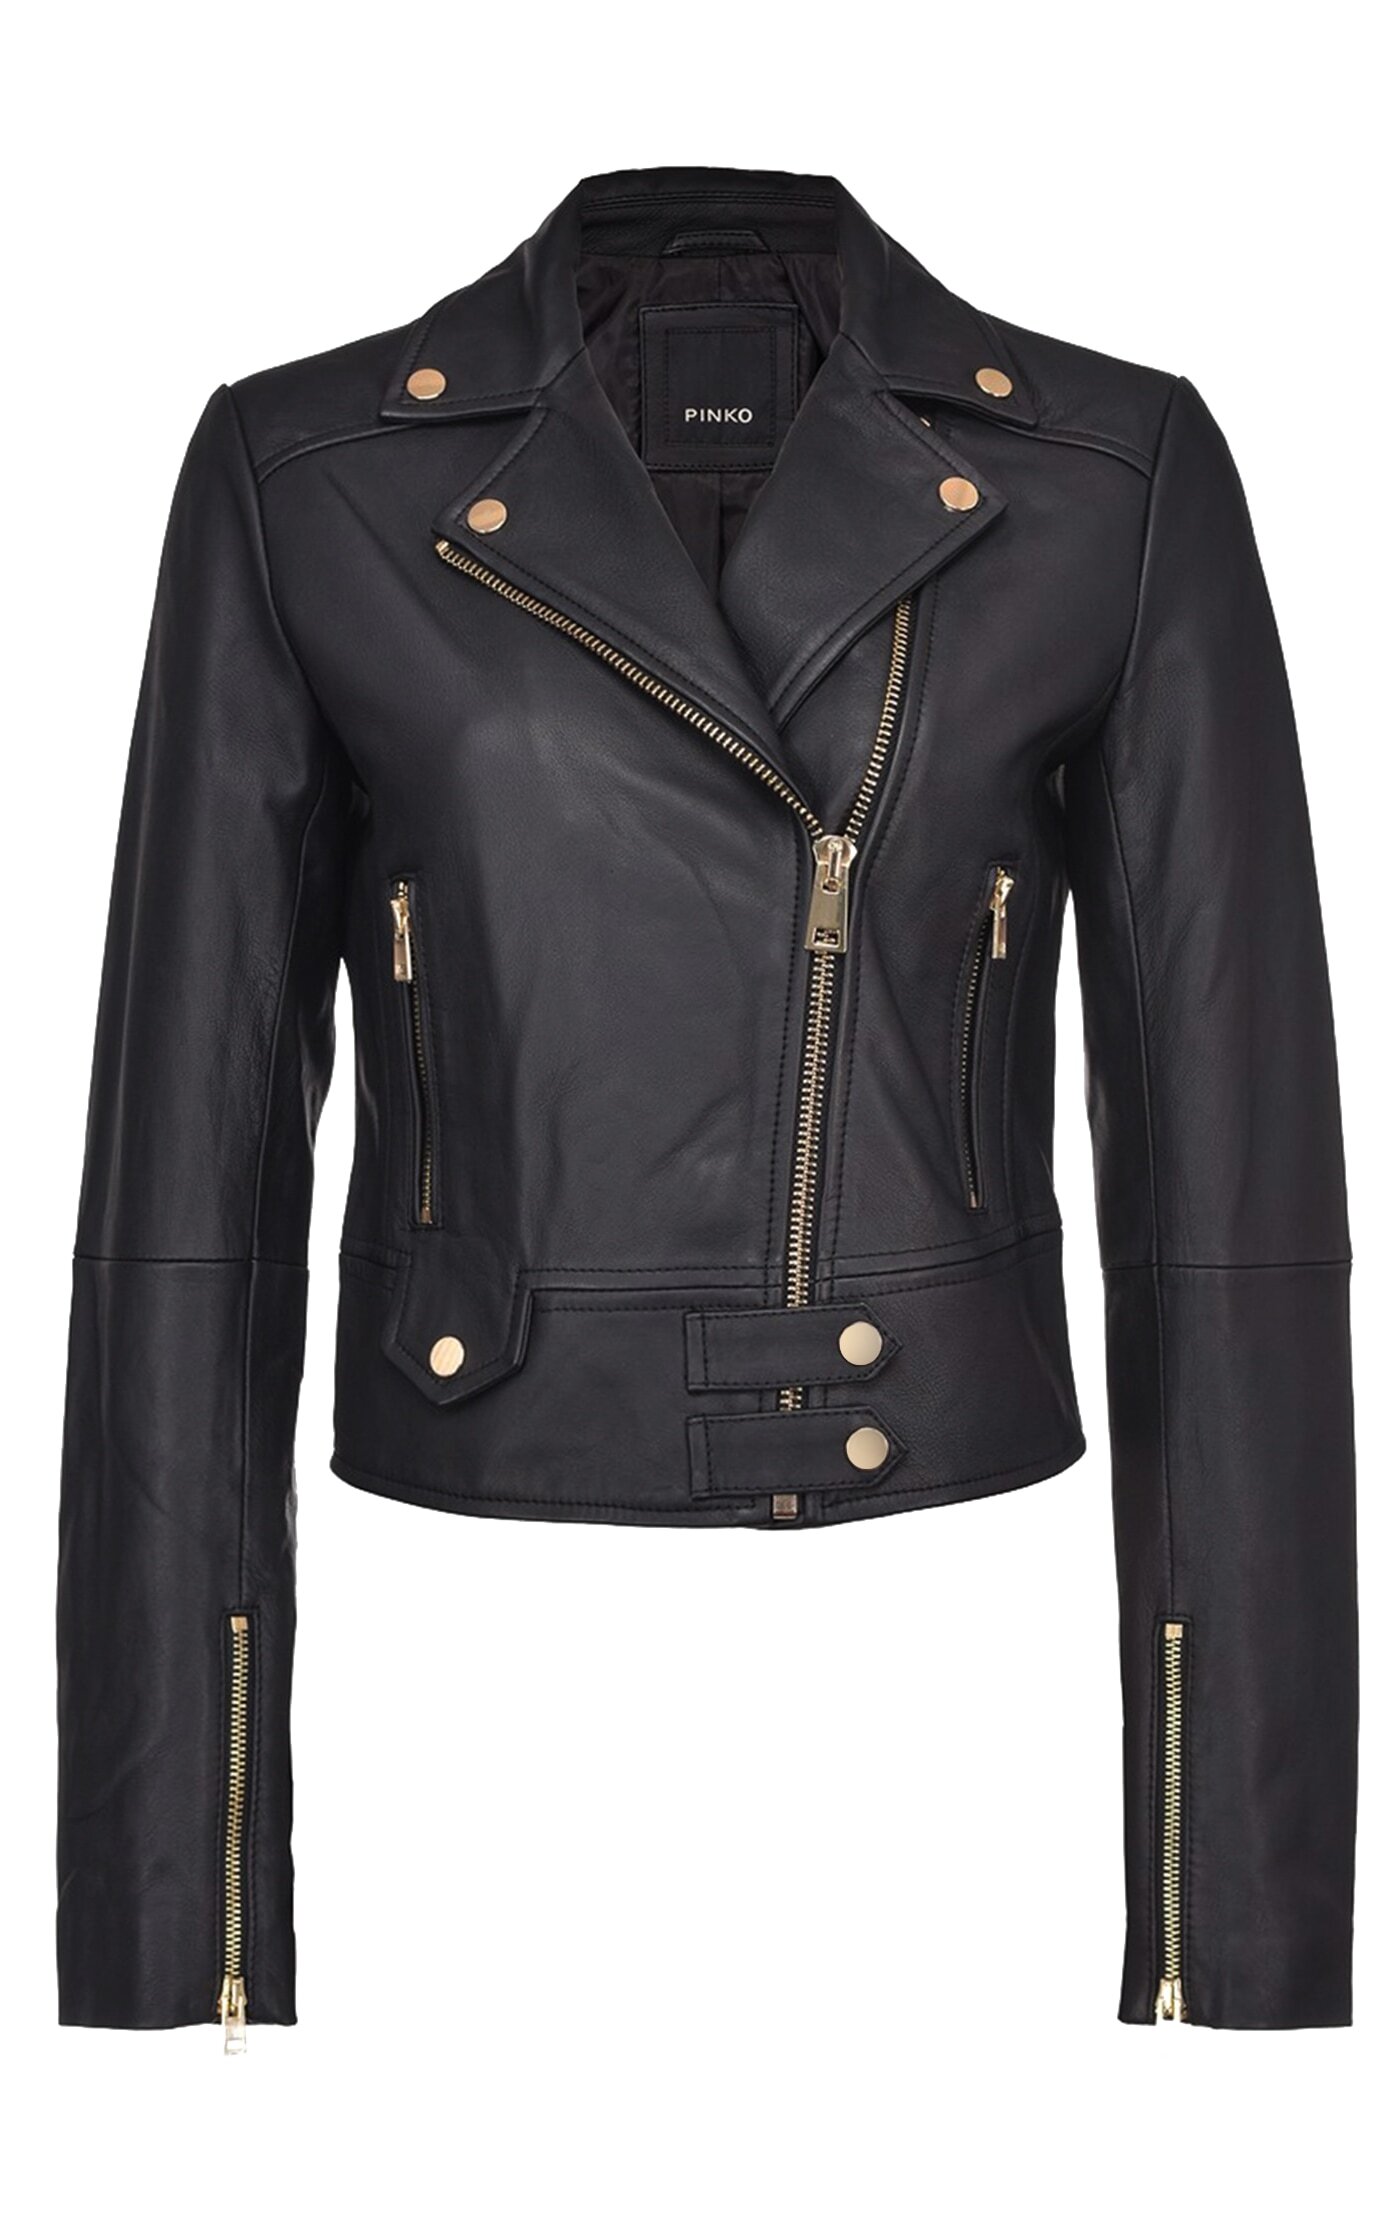 PINKO Nappa leather biker jackets - Harvey Nichols